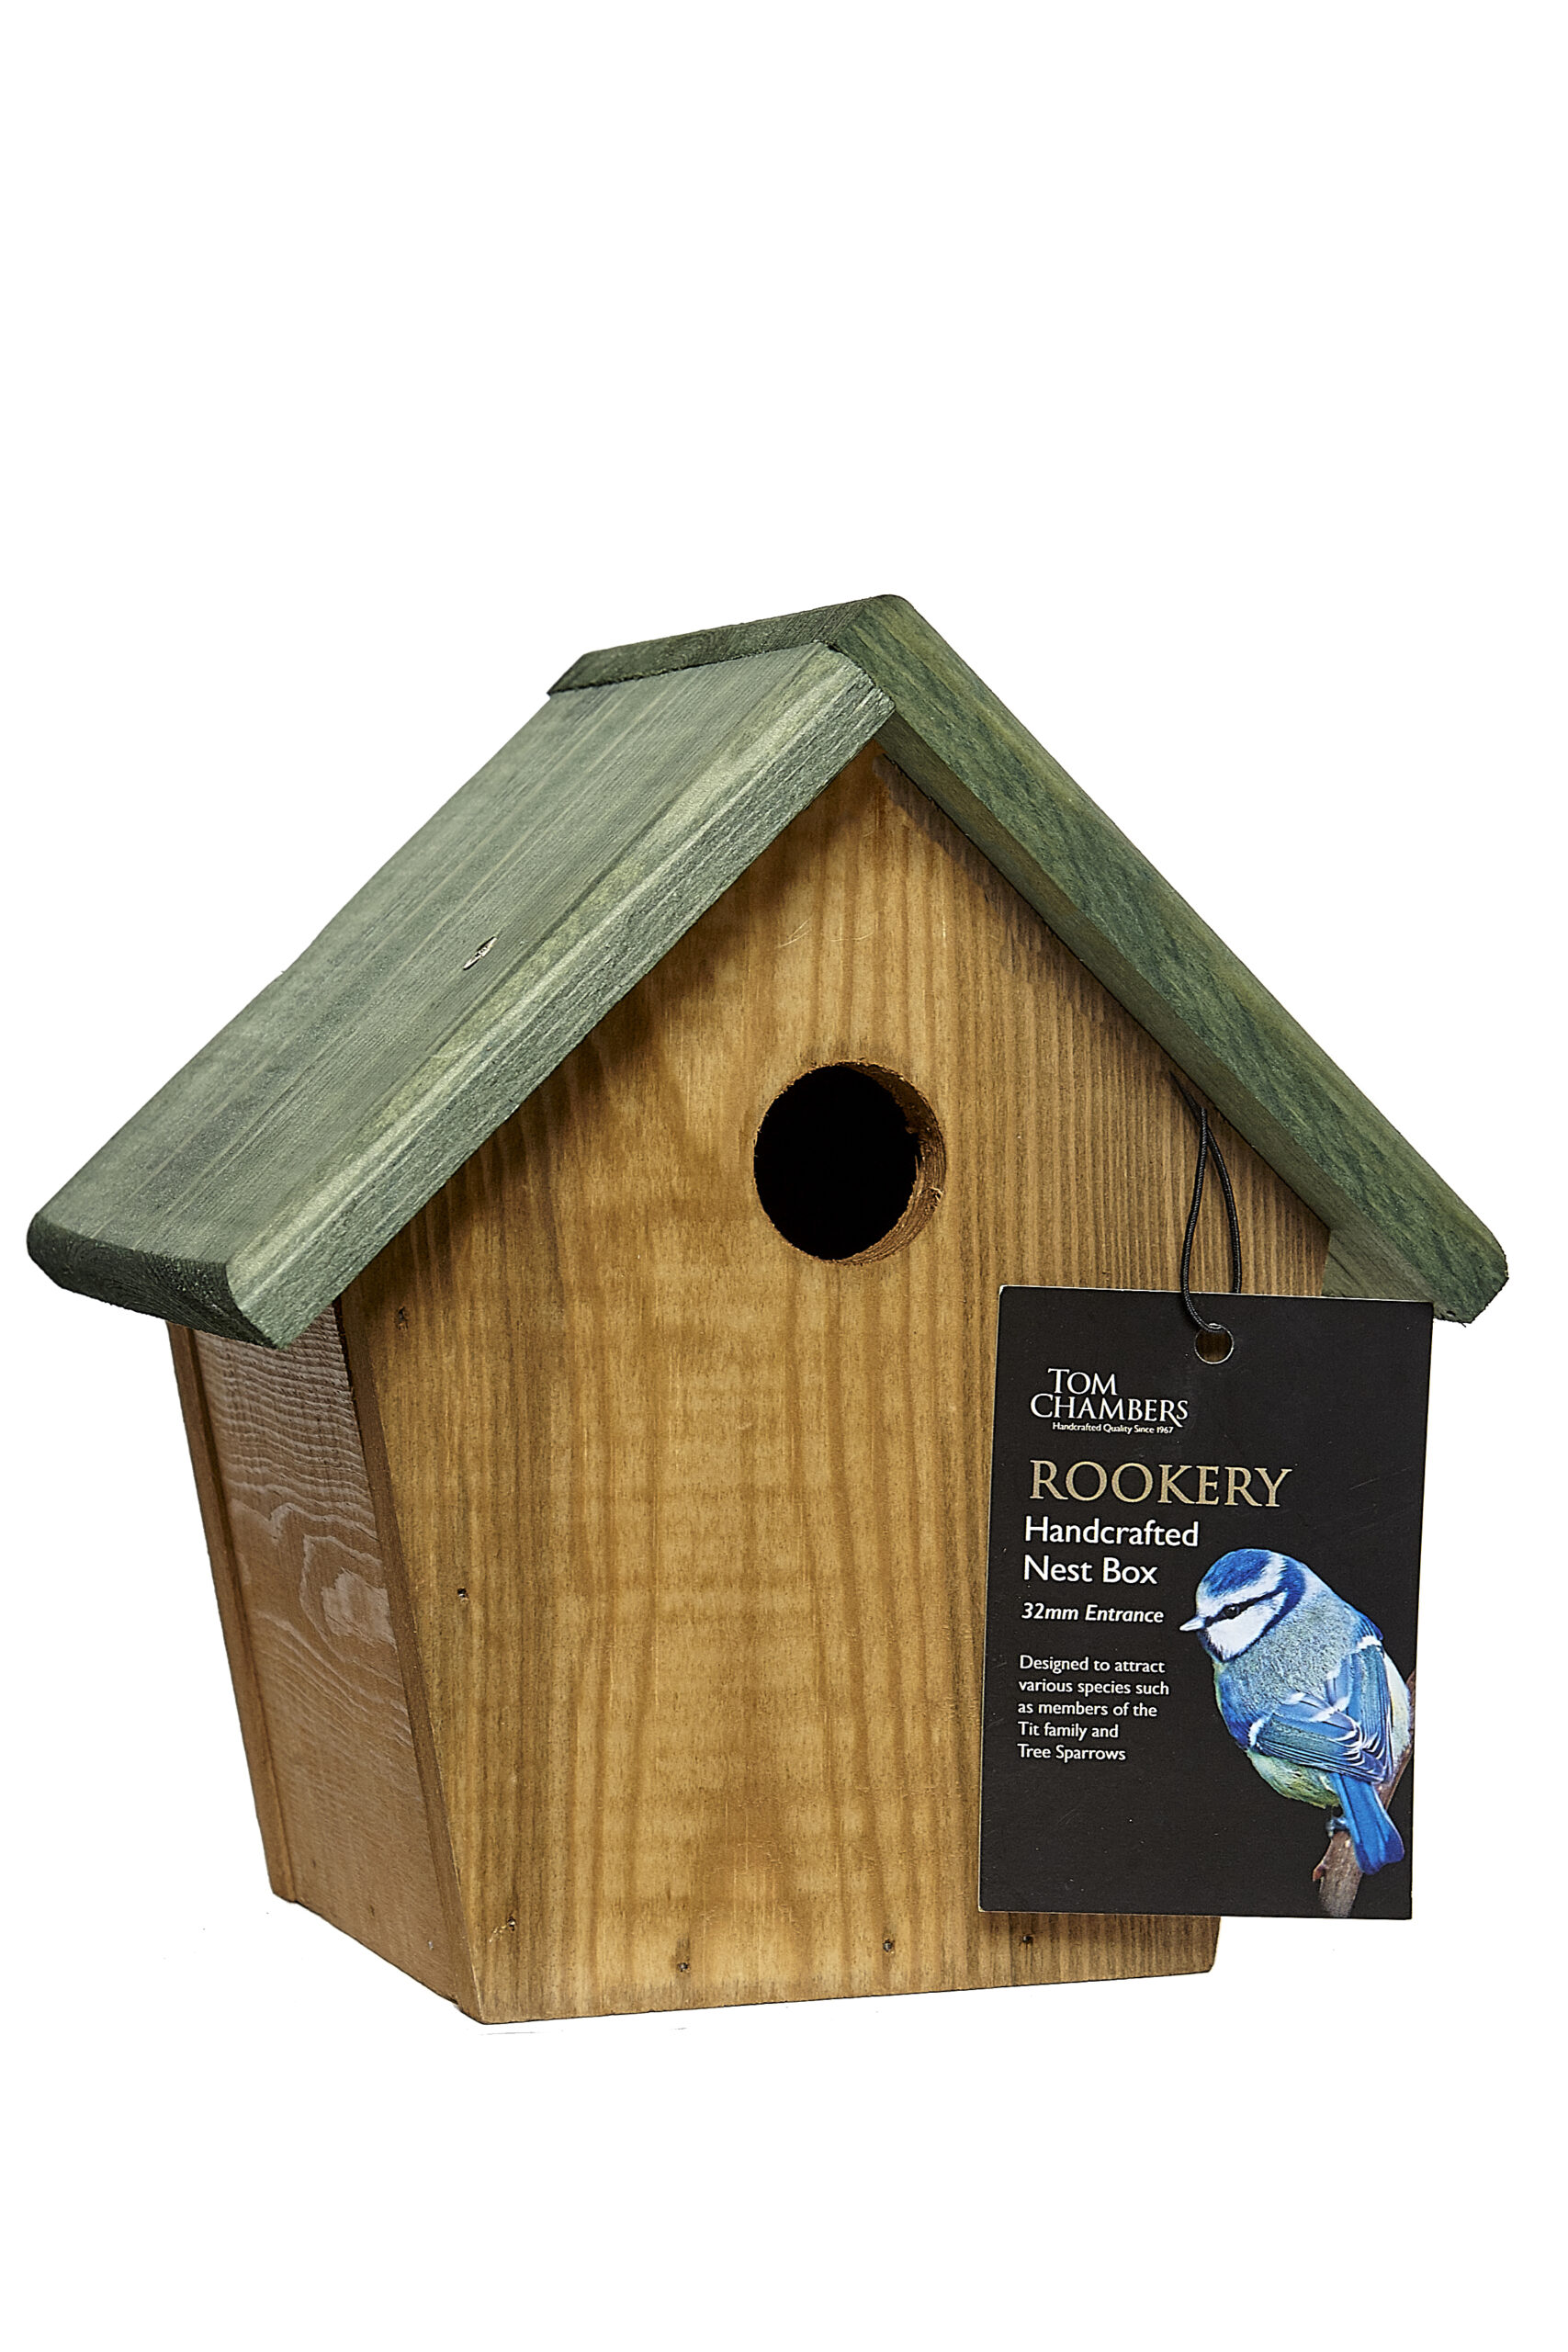 Tom chambers Rookery Bird Nest Box